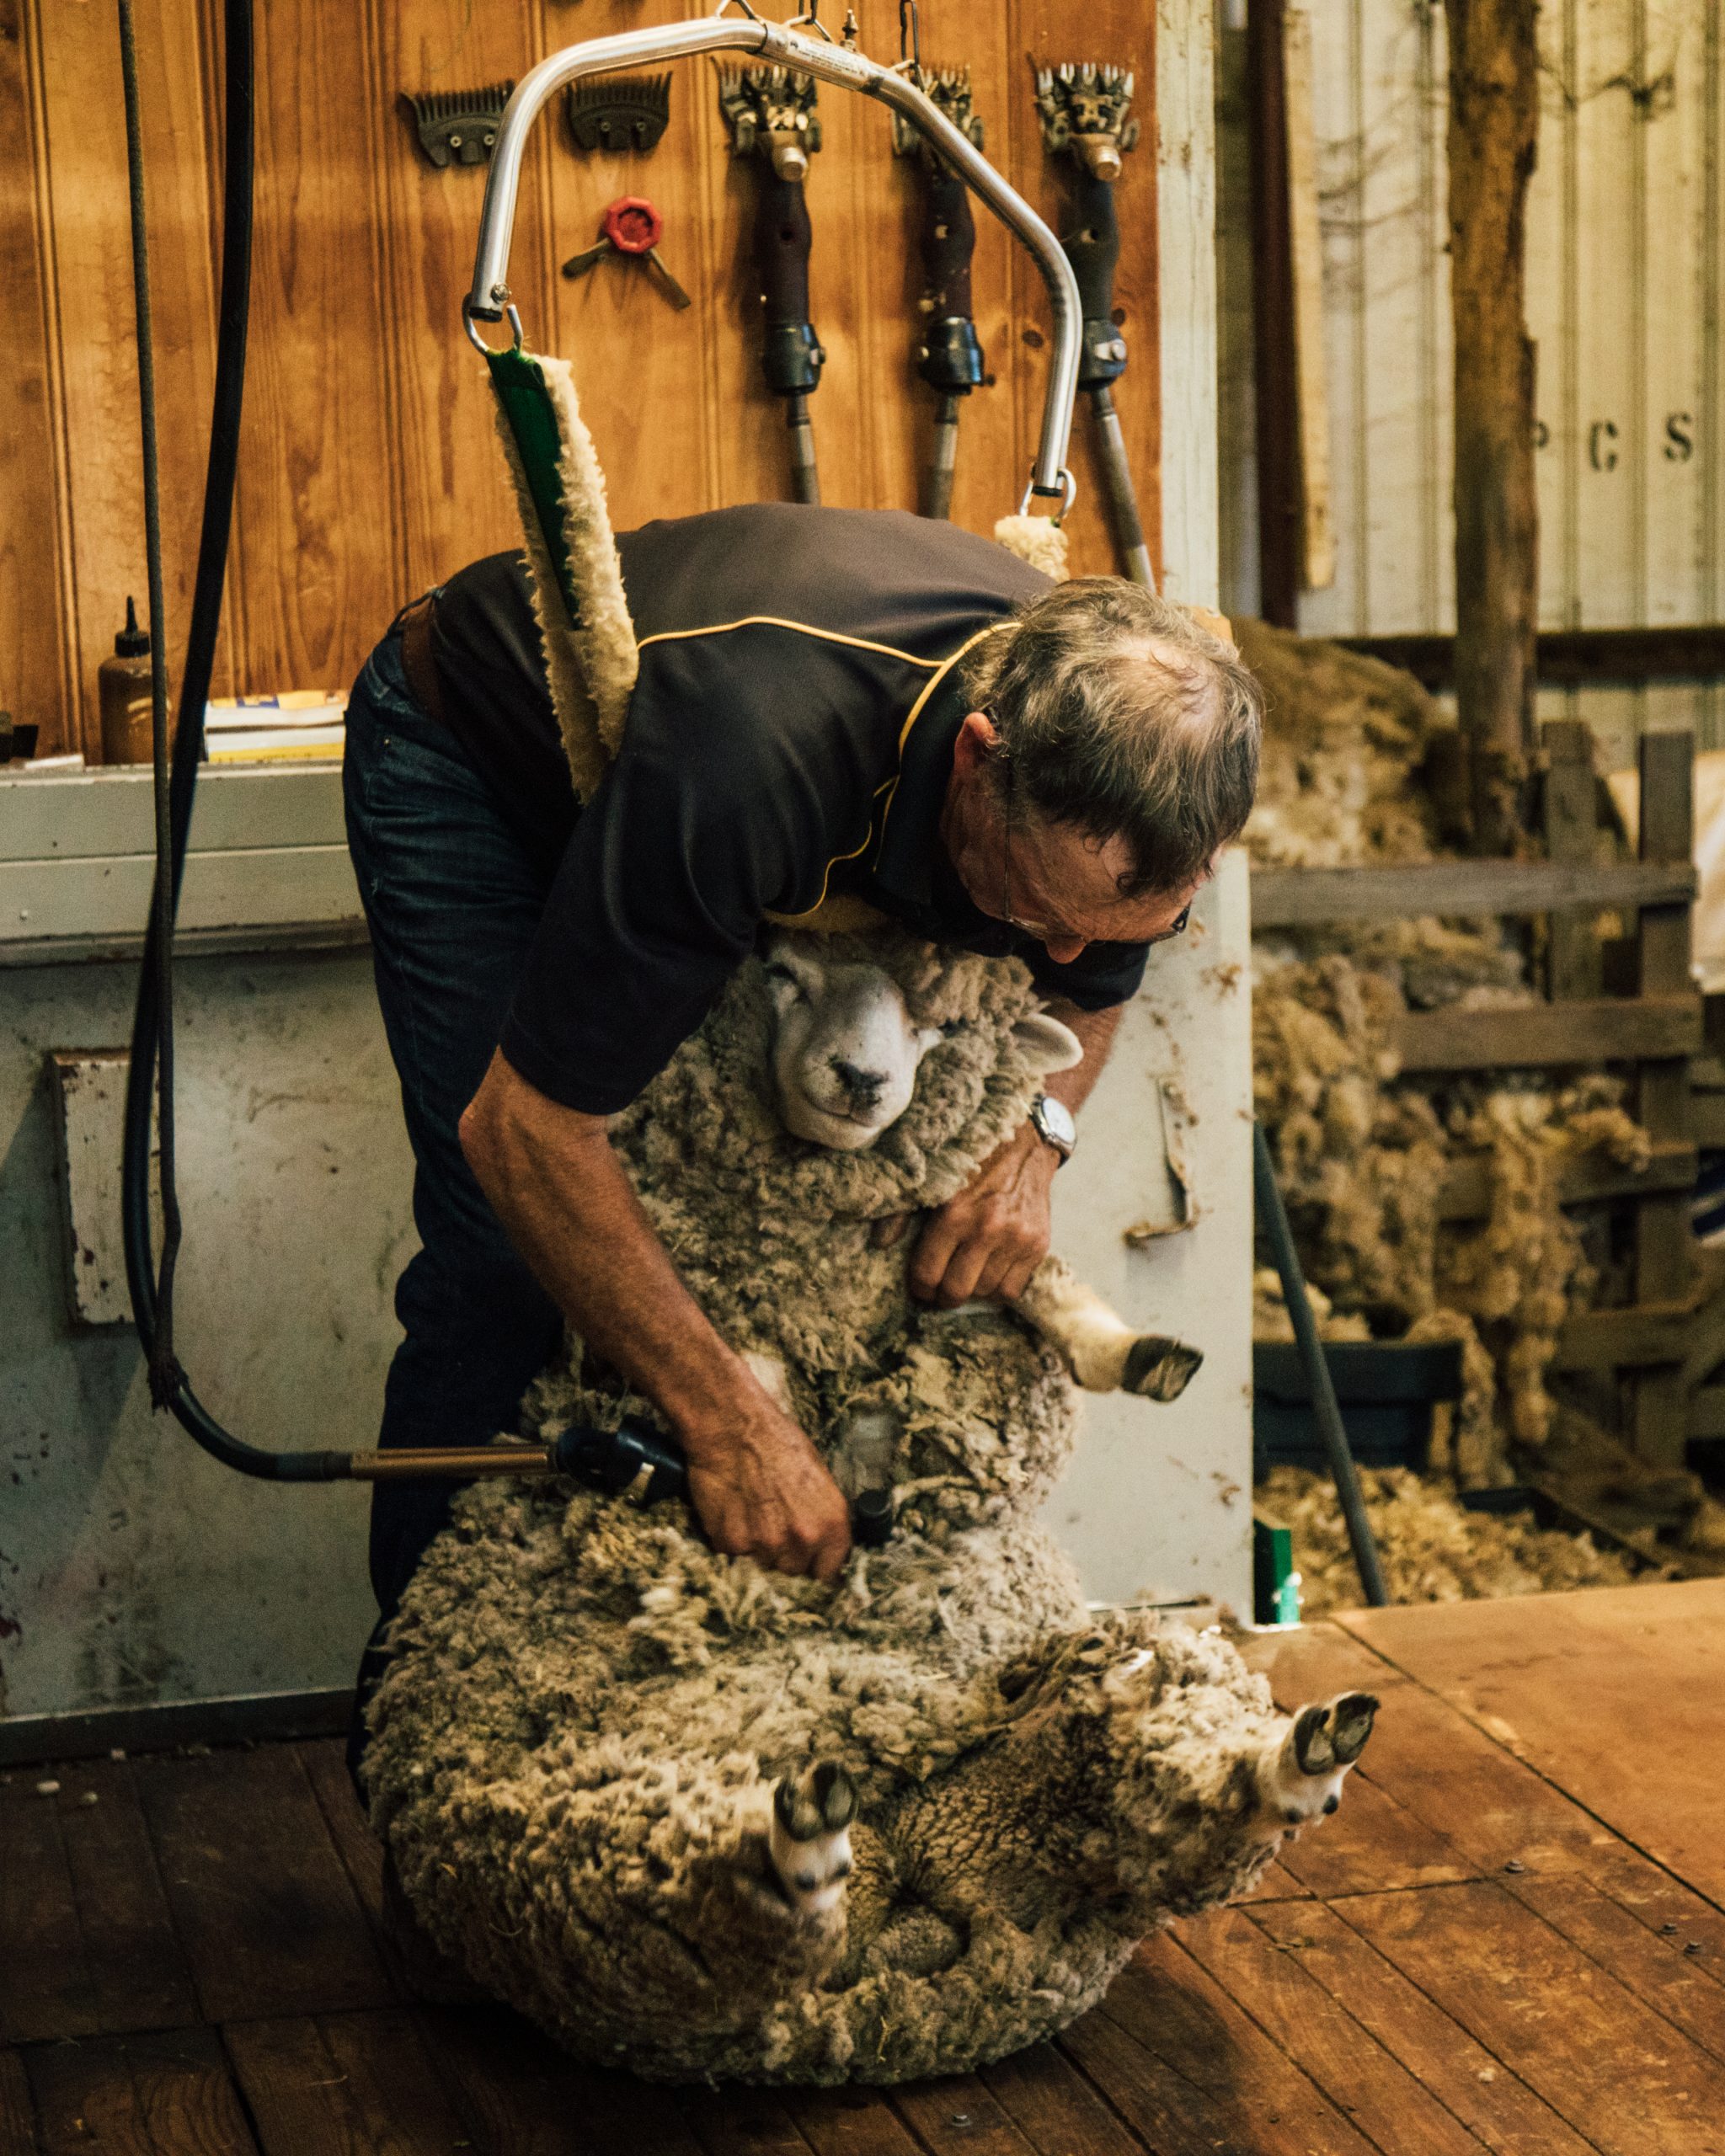 sheep-shearing